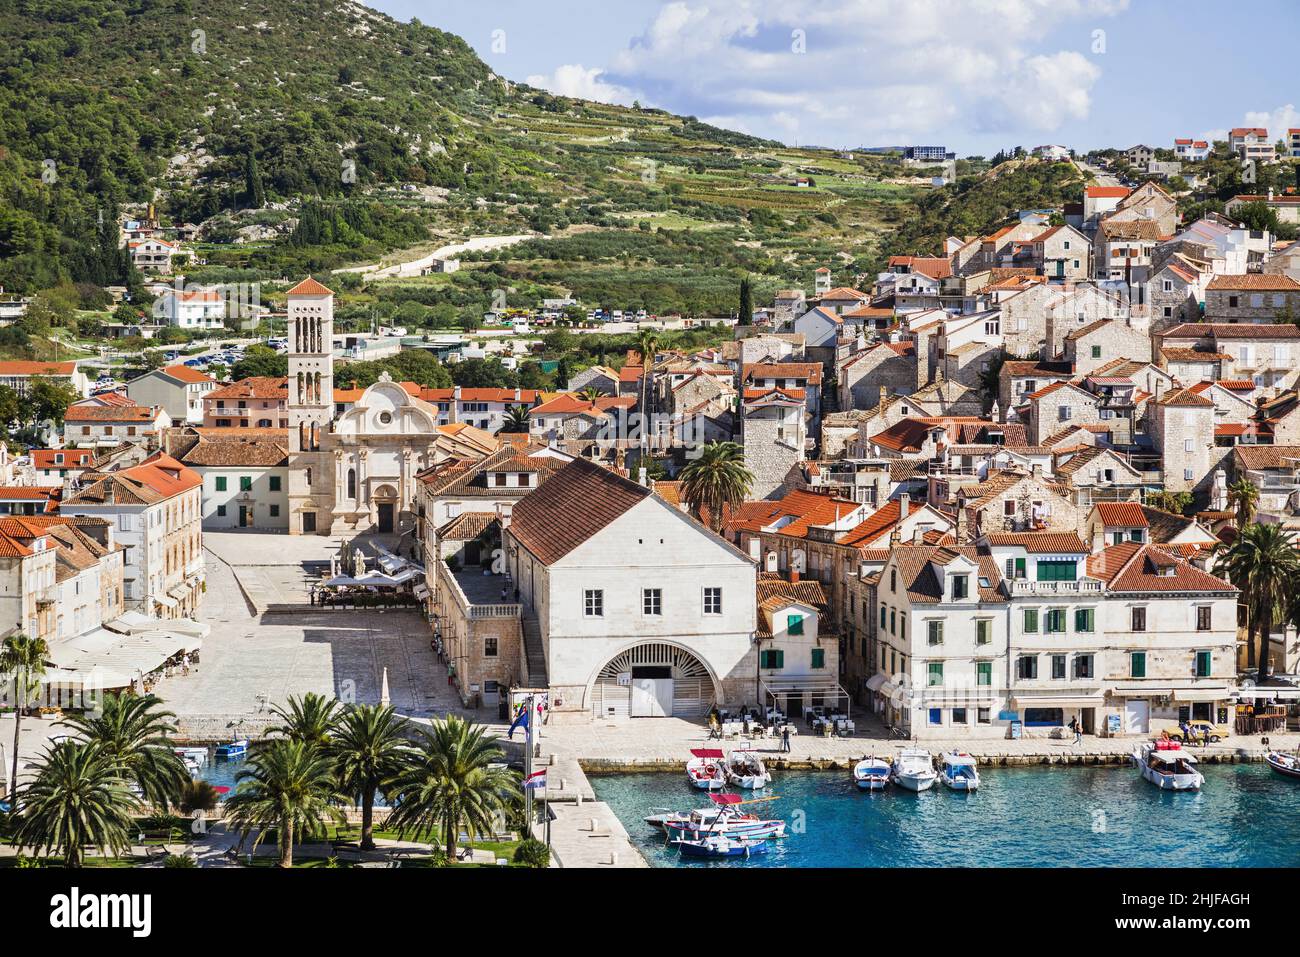 Insel Hvar, Dalmatien, Kroatien. Berühmtes Wahrzeichen und touristisches Ziel für Reisen in Europa Stockfoto